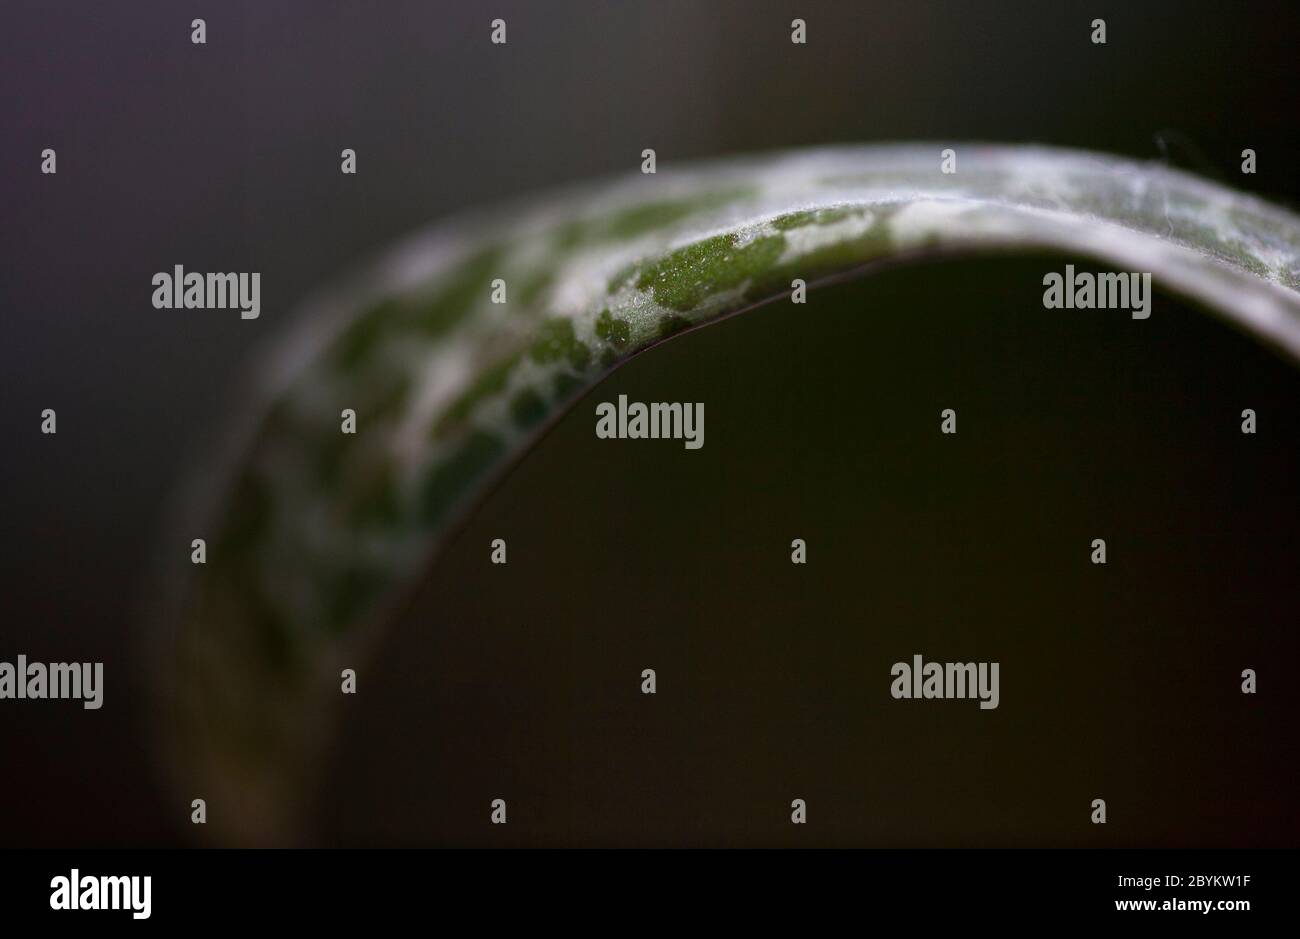 Primo piano di una pianta perenne, ledebouria socialis, che mostra il suo caratteristico motivo a foglia. Londra, Inghilterra Regno Unito Foto Stock